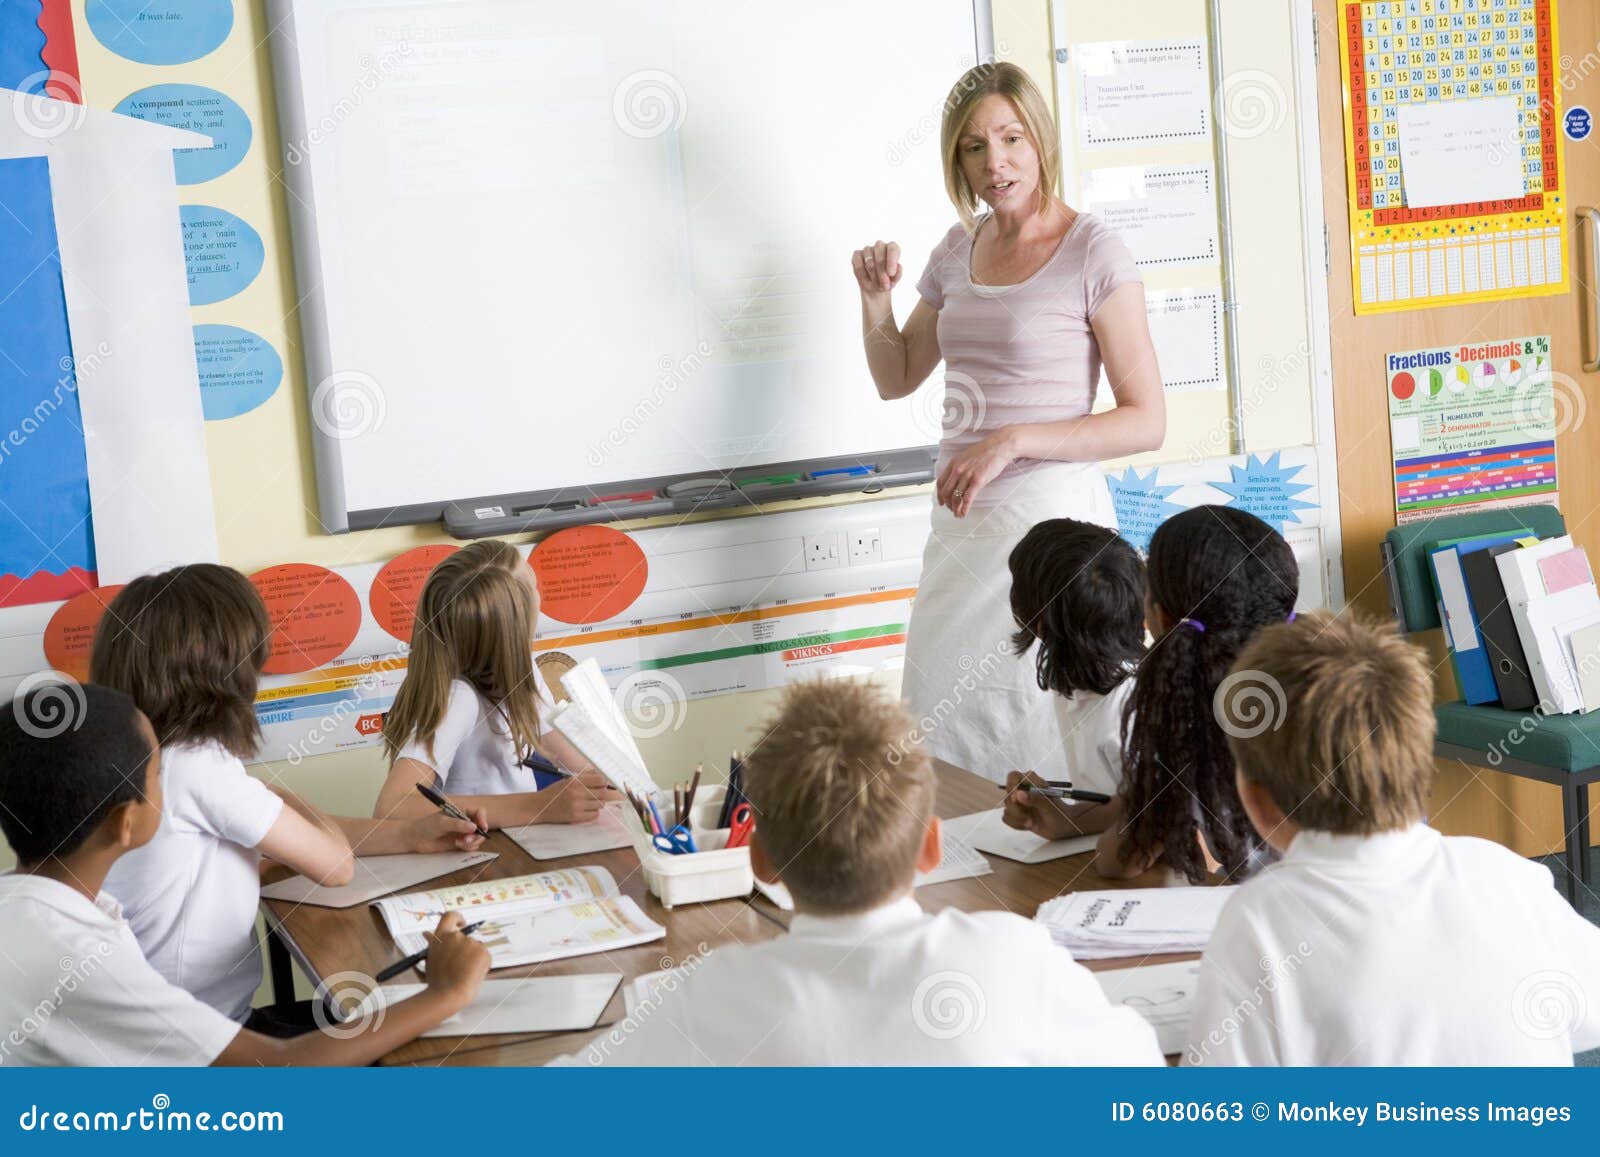 a teacher teaching a junior school class